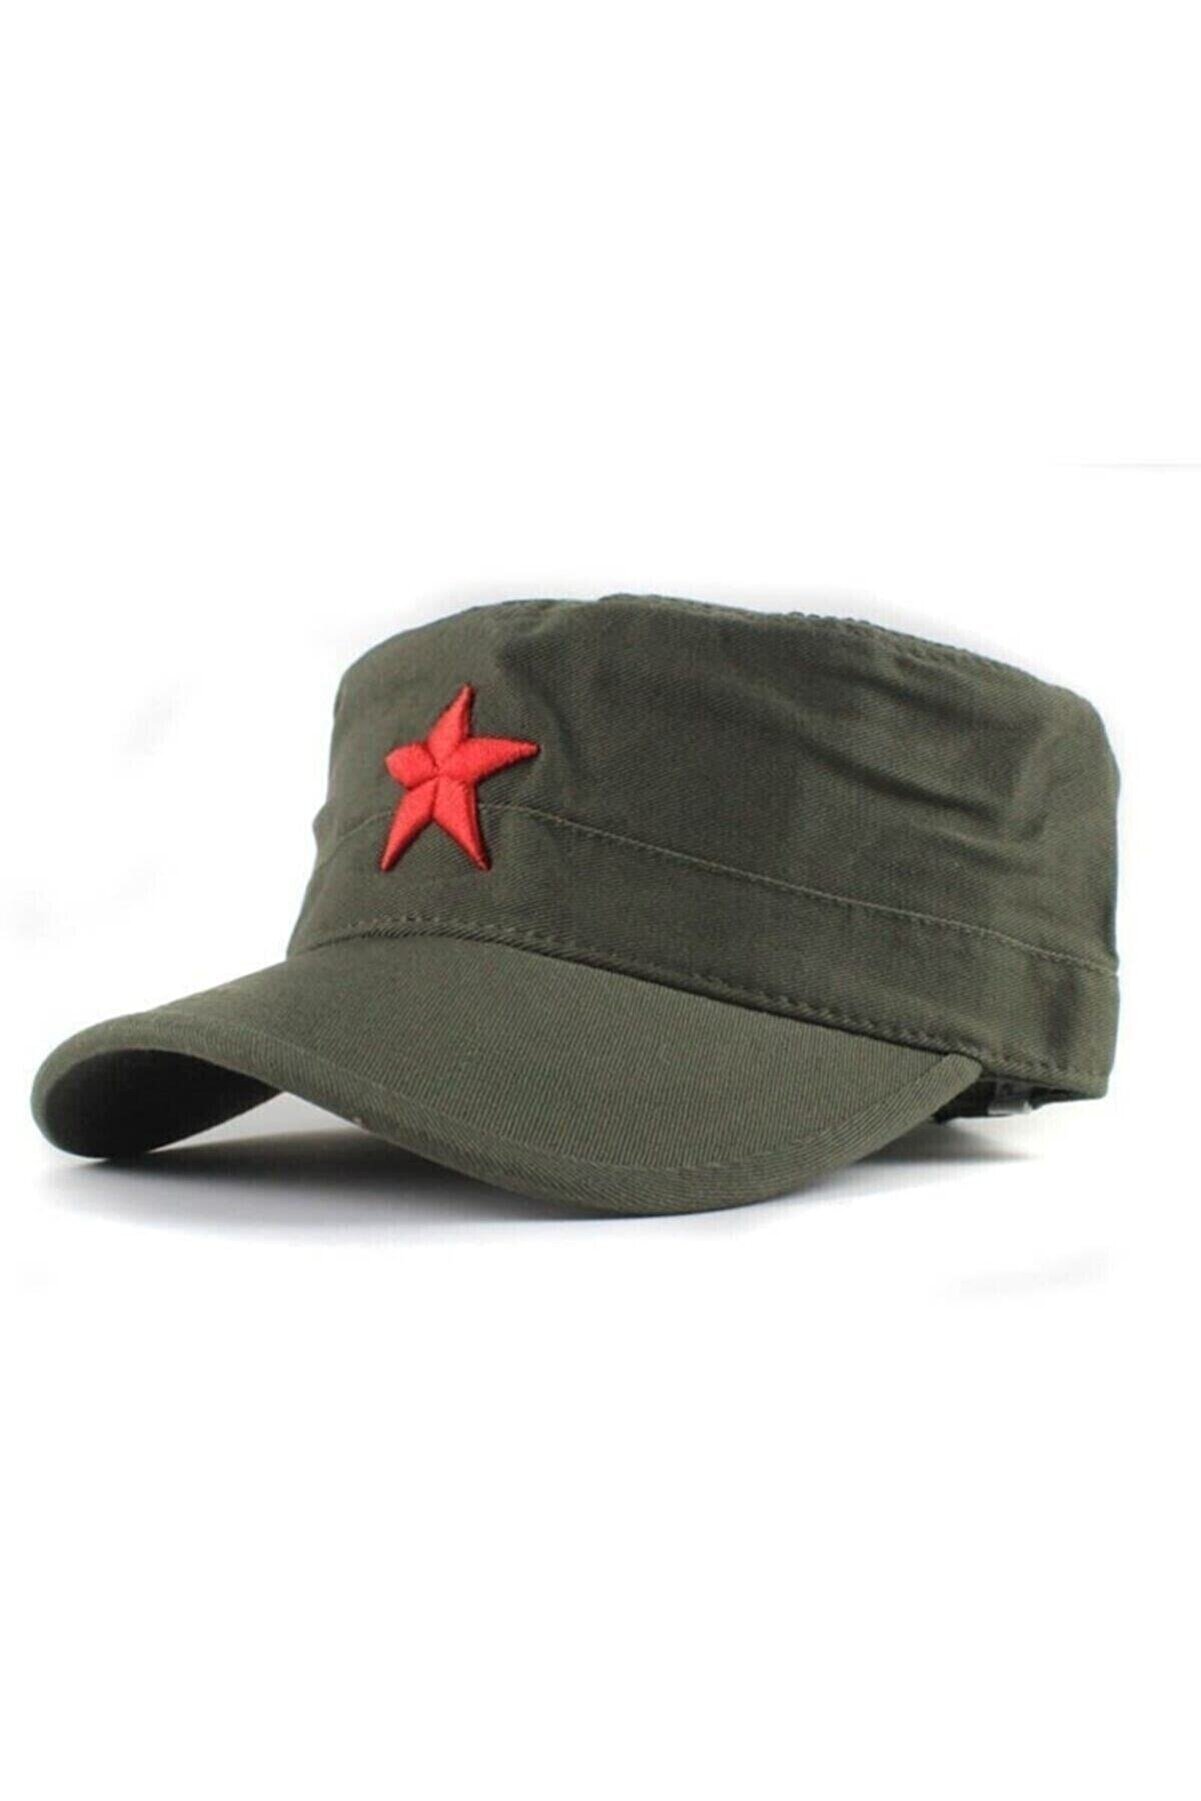 Shopiolog Kızıl Yıldızlı Che Guevara, Fidel Castro Şapkası